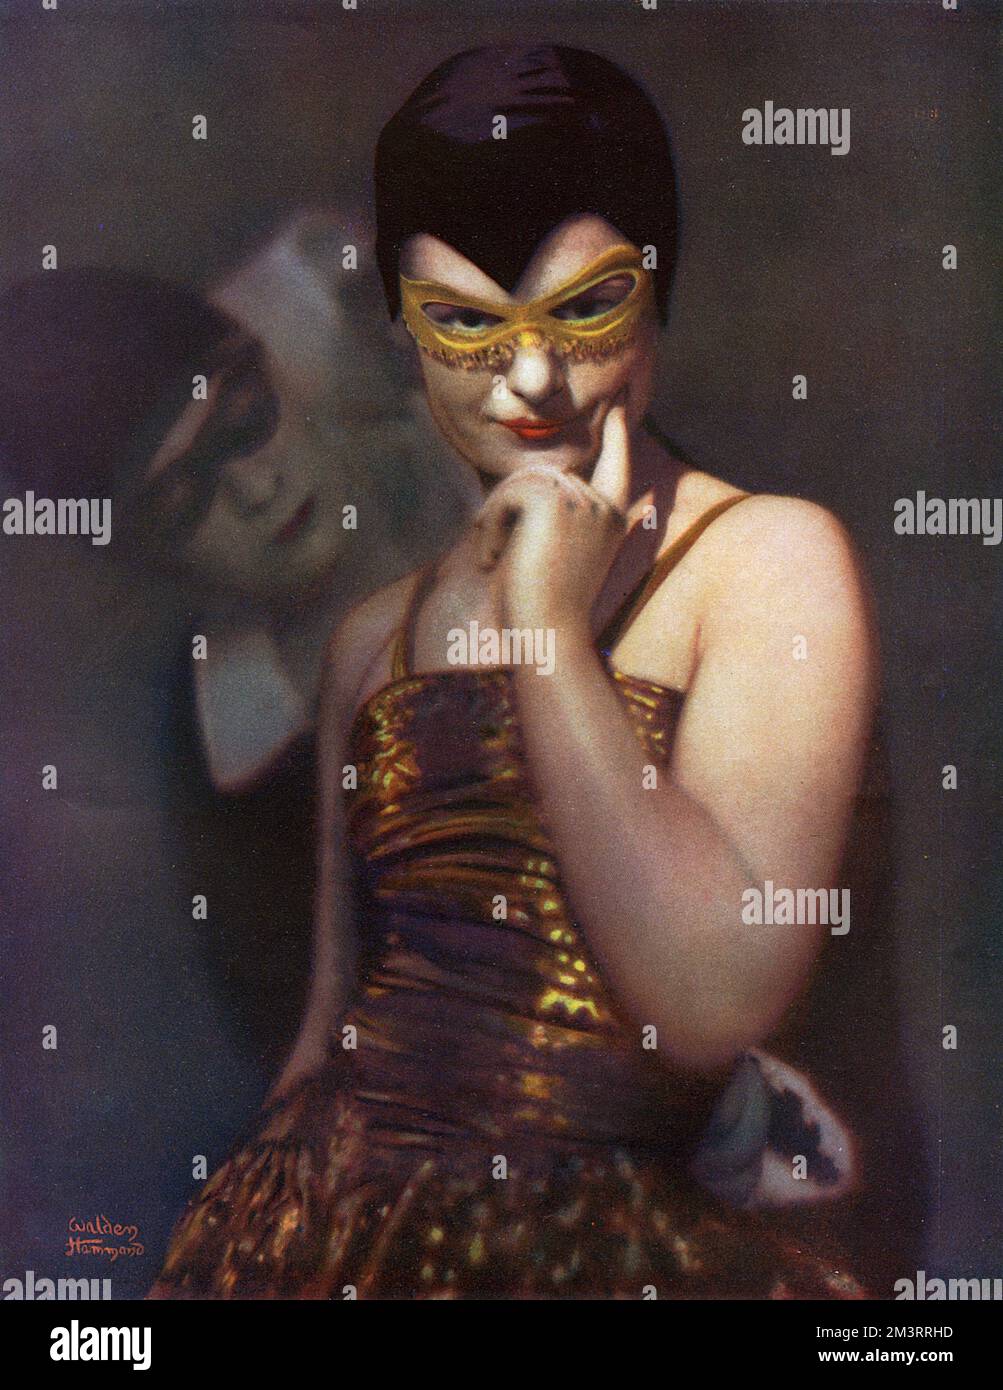 Photographie en couleur d'une femme en costume de masque. Derrière elle une figure fanée d'un Pierrot. Date: 1930 Banque D'Images